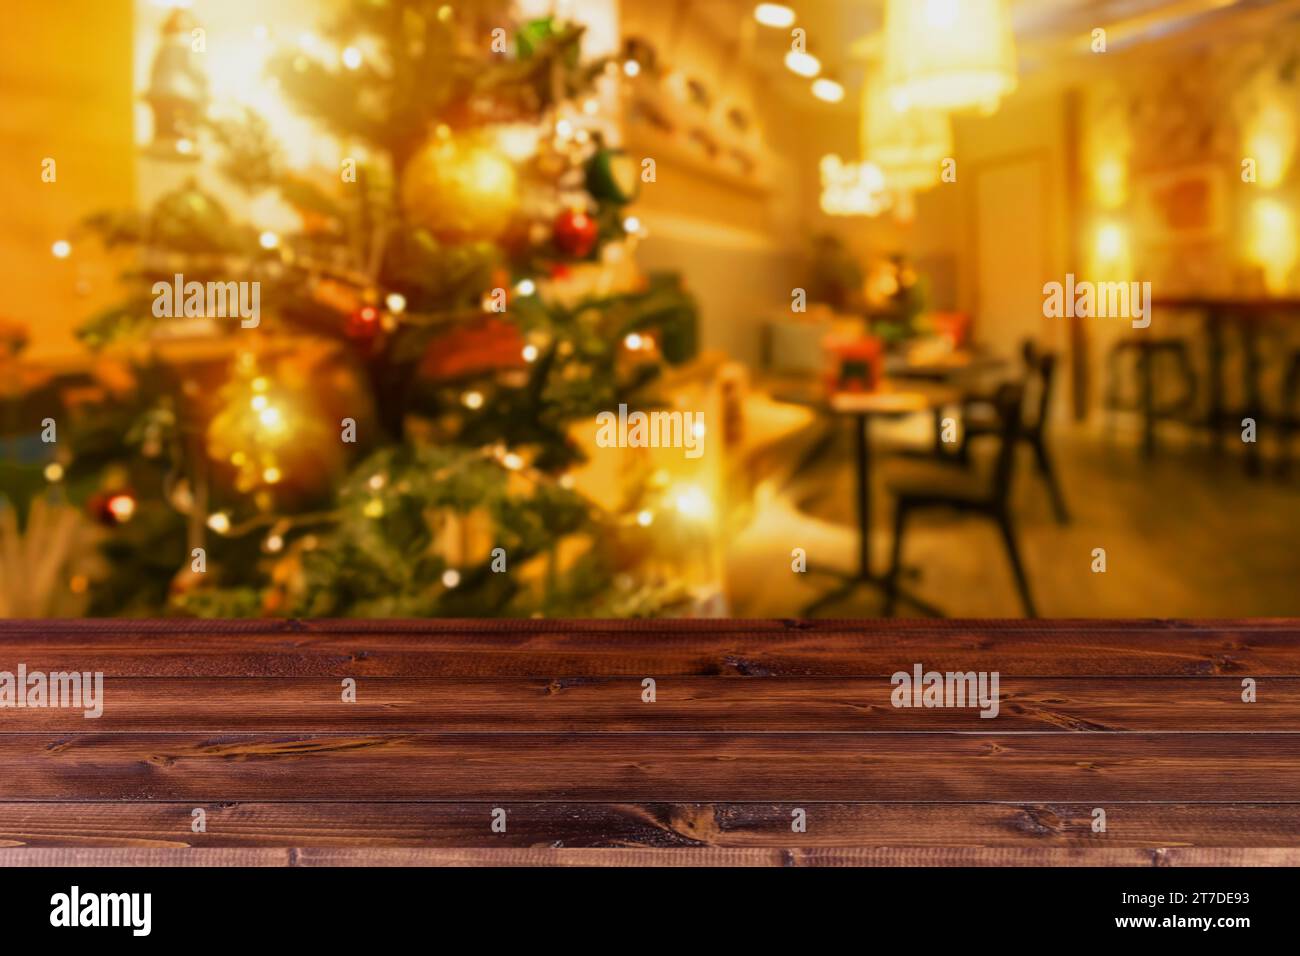 Sfocare gli interni della decorazione della casa natalizia con tavolo in legno, spazio vuoto per i prodotti da regalo, sfondo pubblicitario per montaggio. Foto Stock